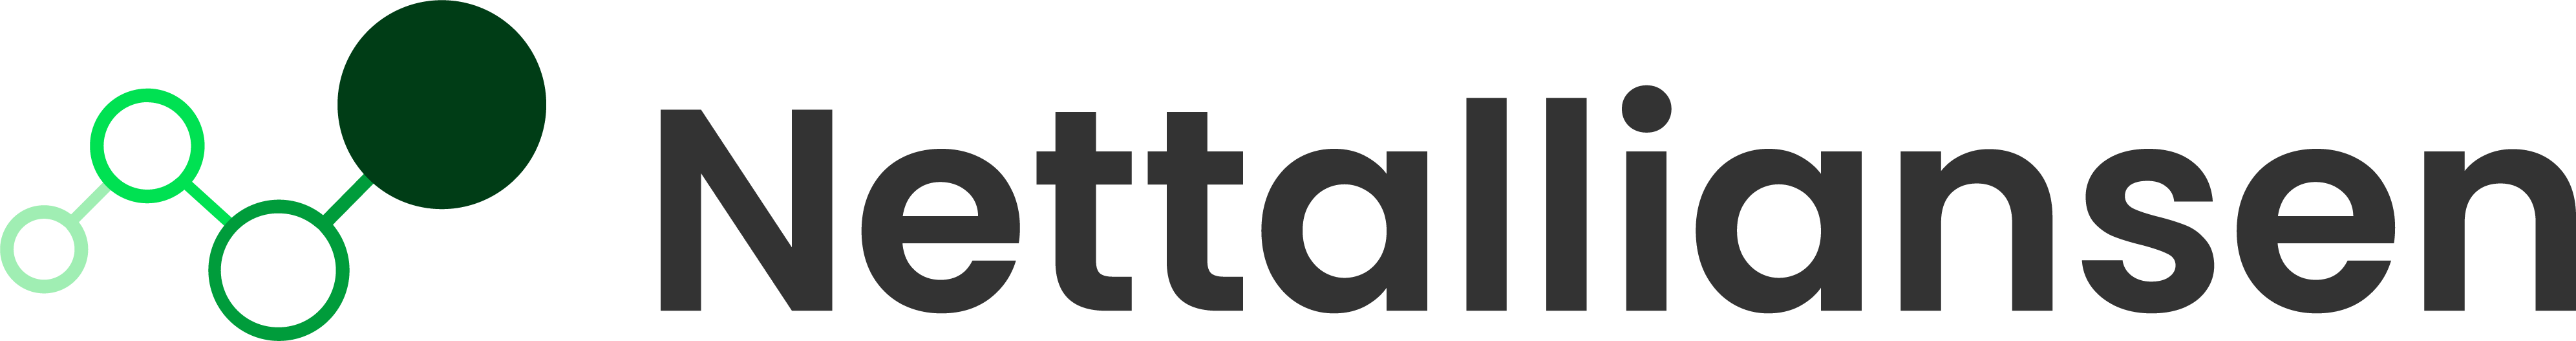 Nettalliansen Logo